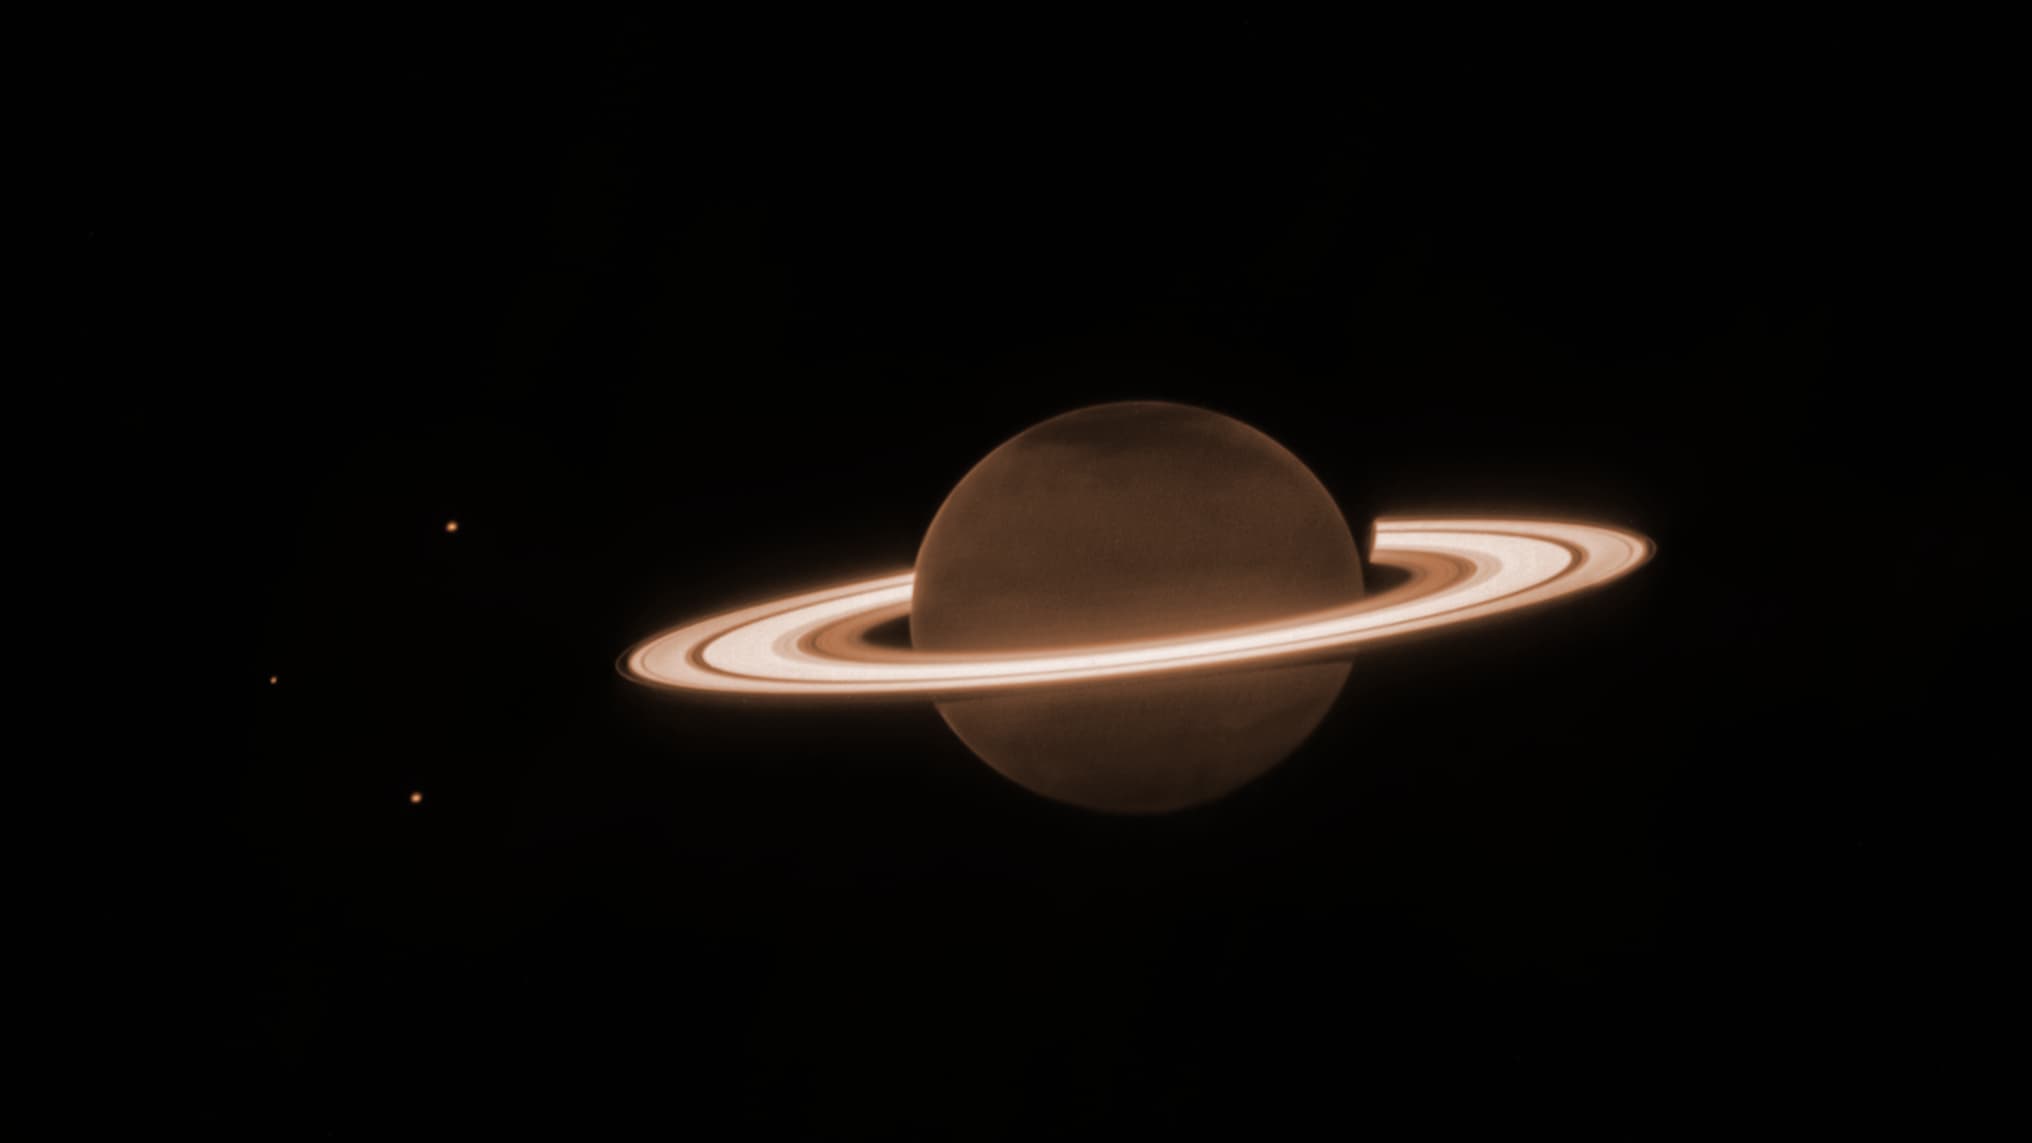 De James Webb-telescoop heeft een opmerkelijk, nog nooit eerder vertoond beeld van Saturnus onthuld